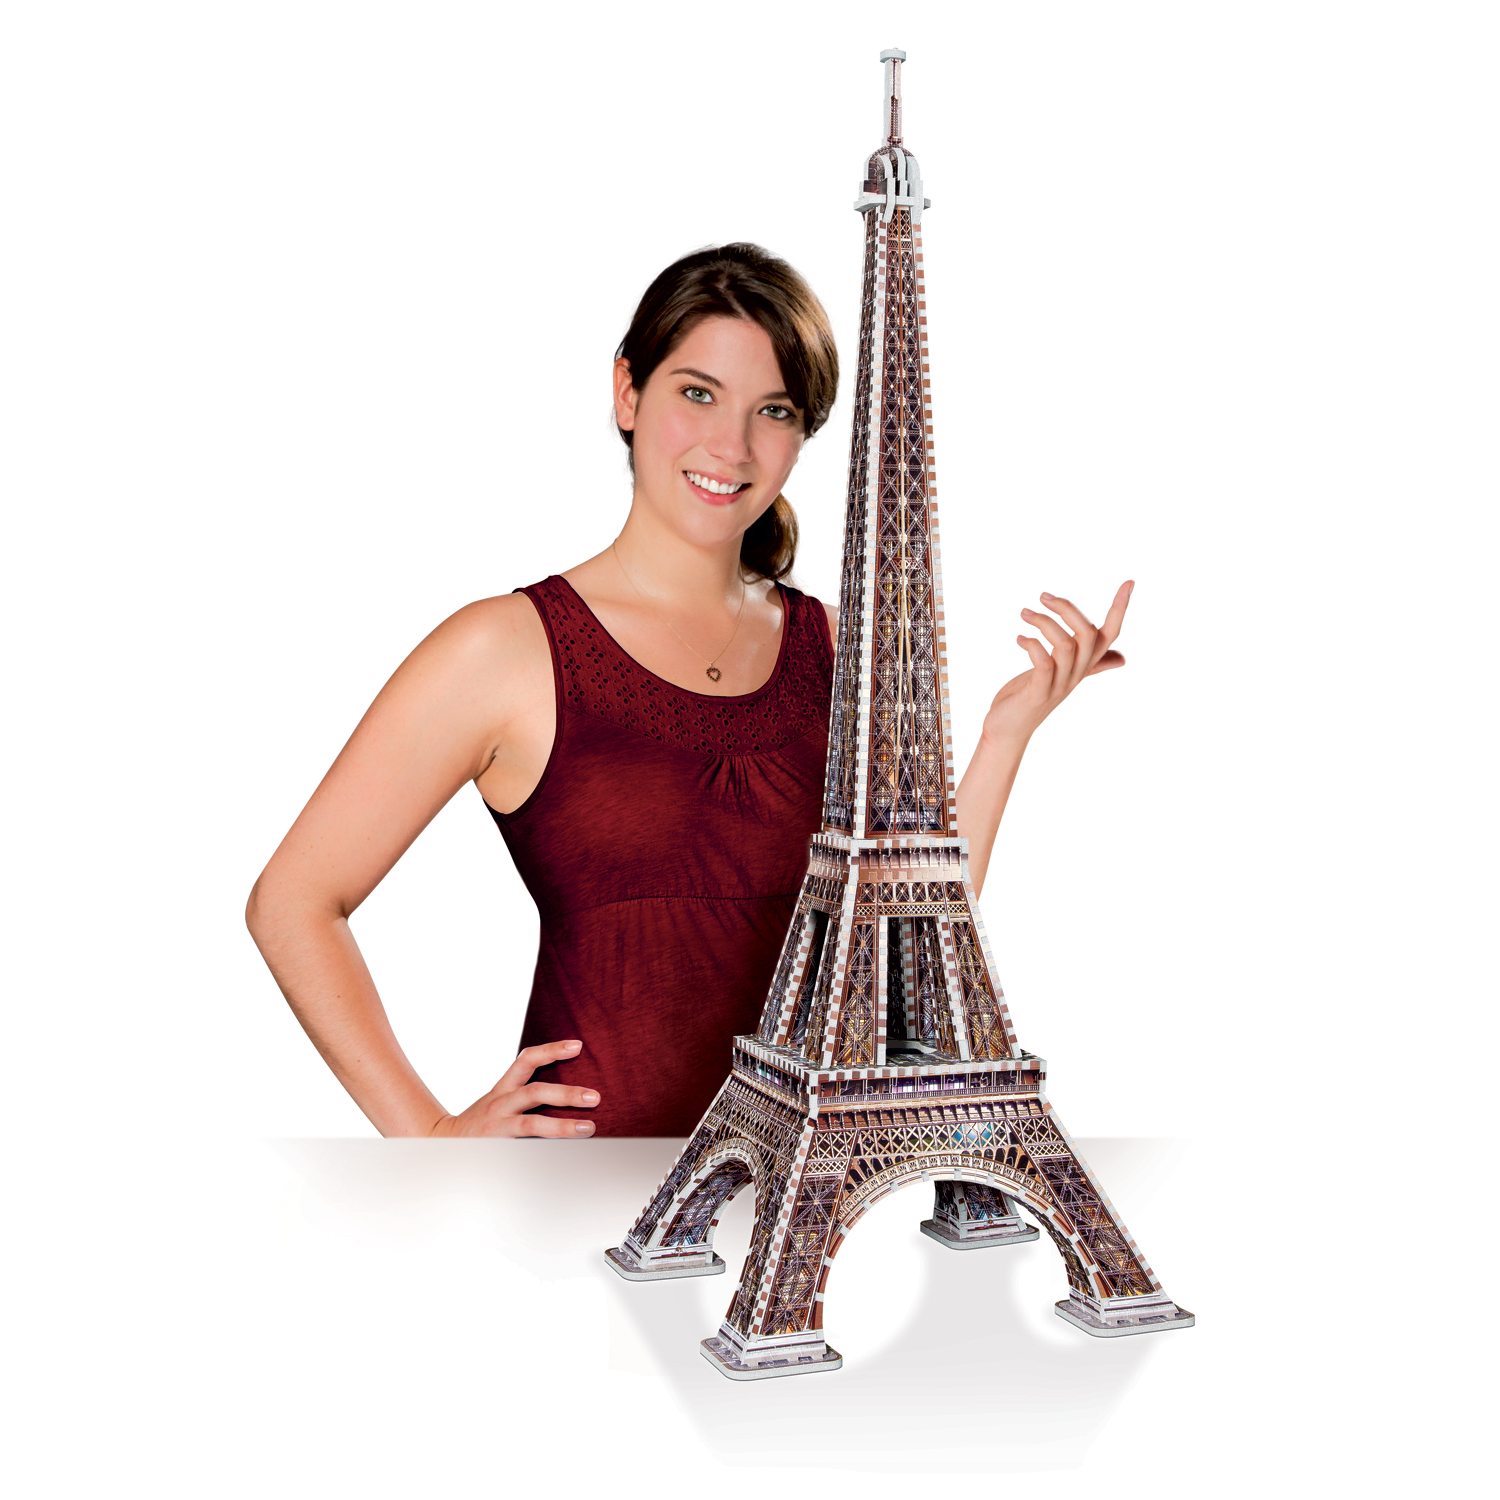 3D Puzzle Tour Eiffel avec DEL, 84 pièces, Cubi…